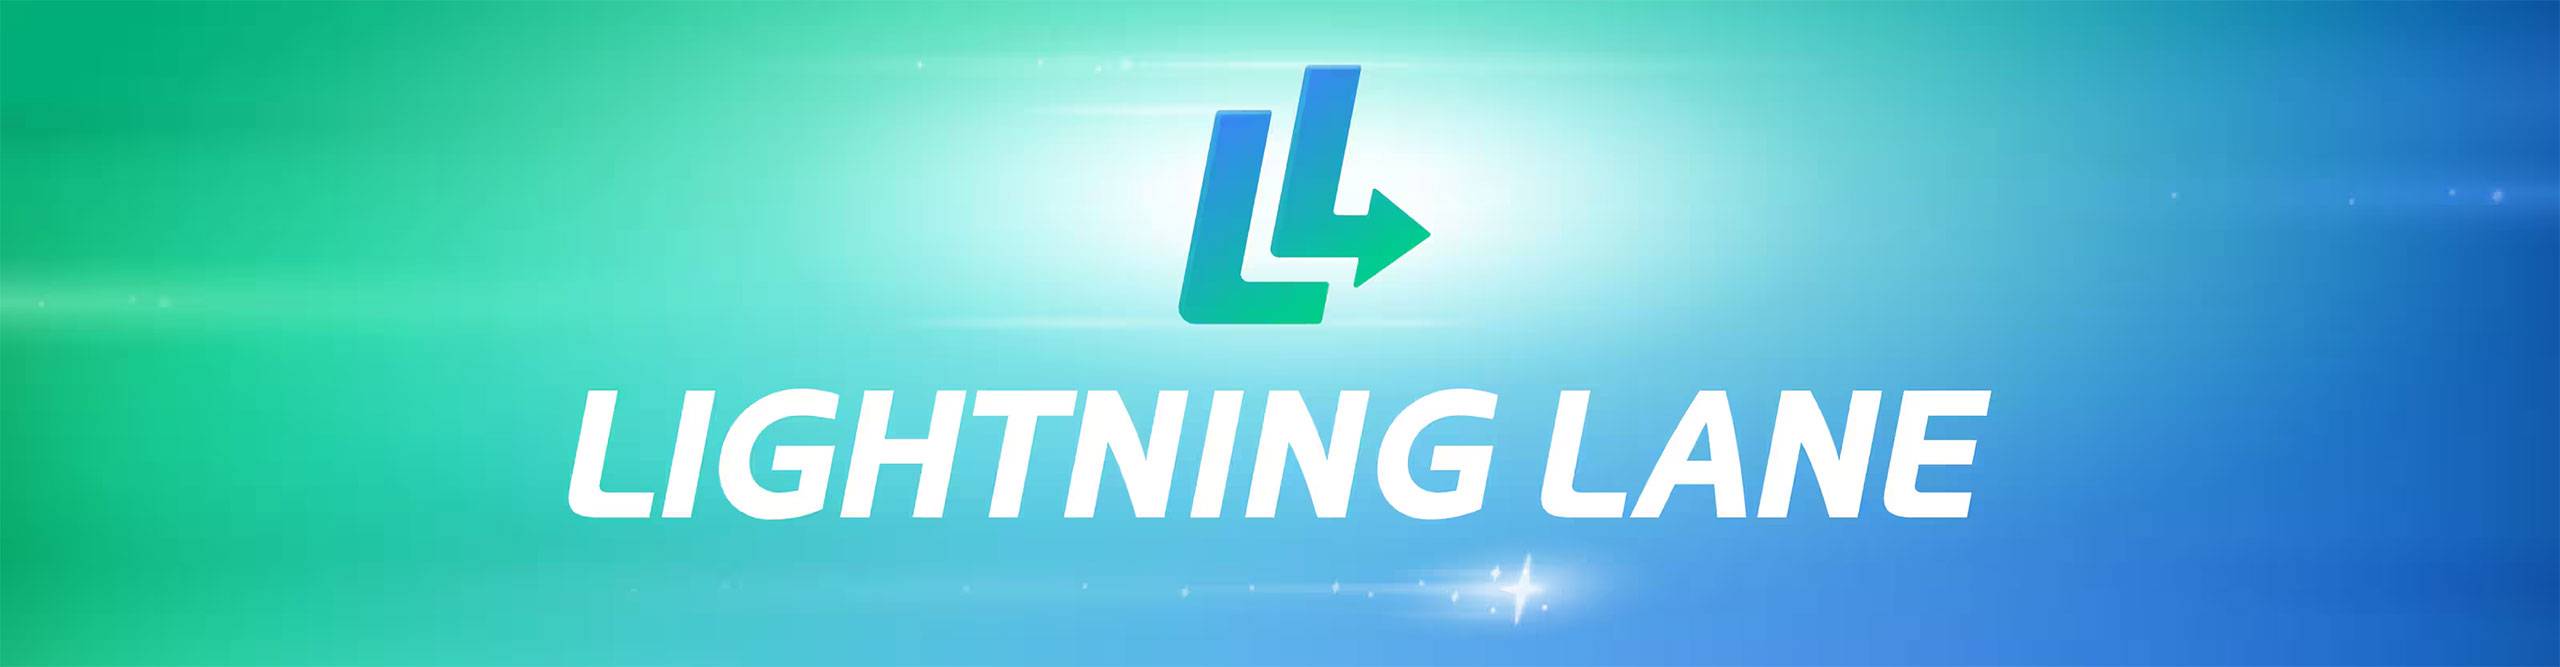 Lightning Lane Pass logo